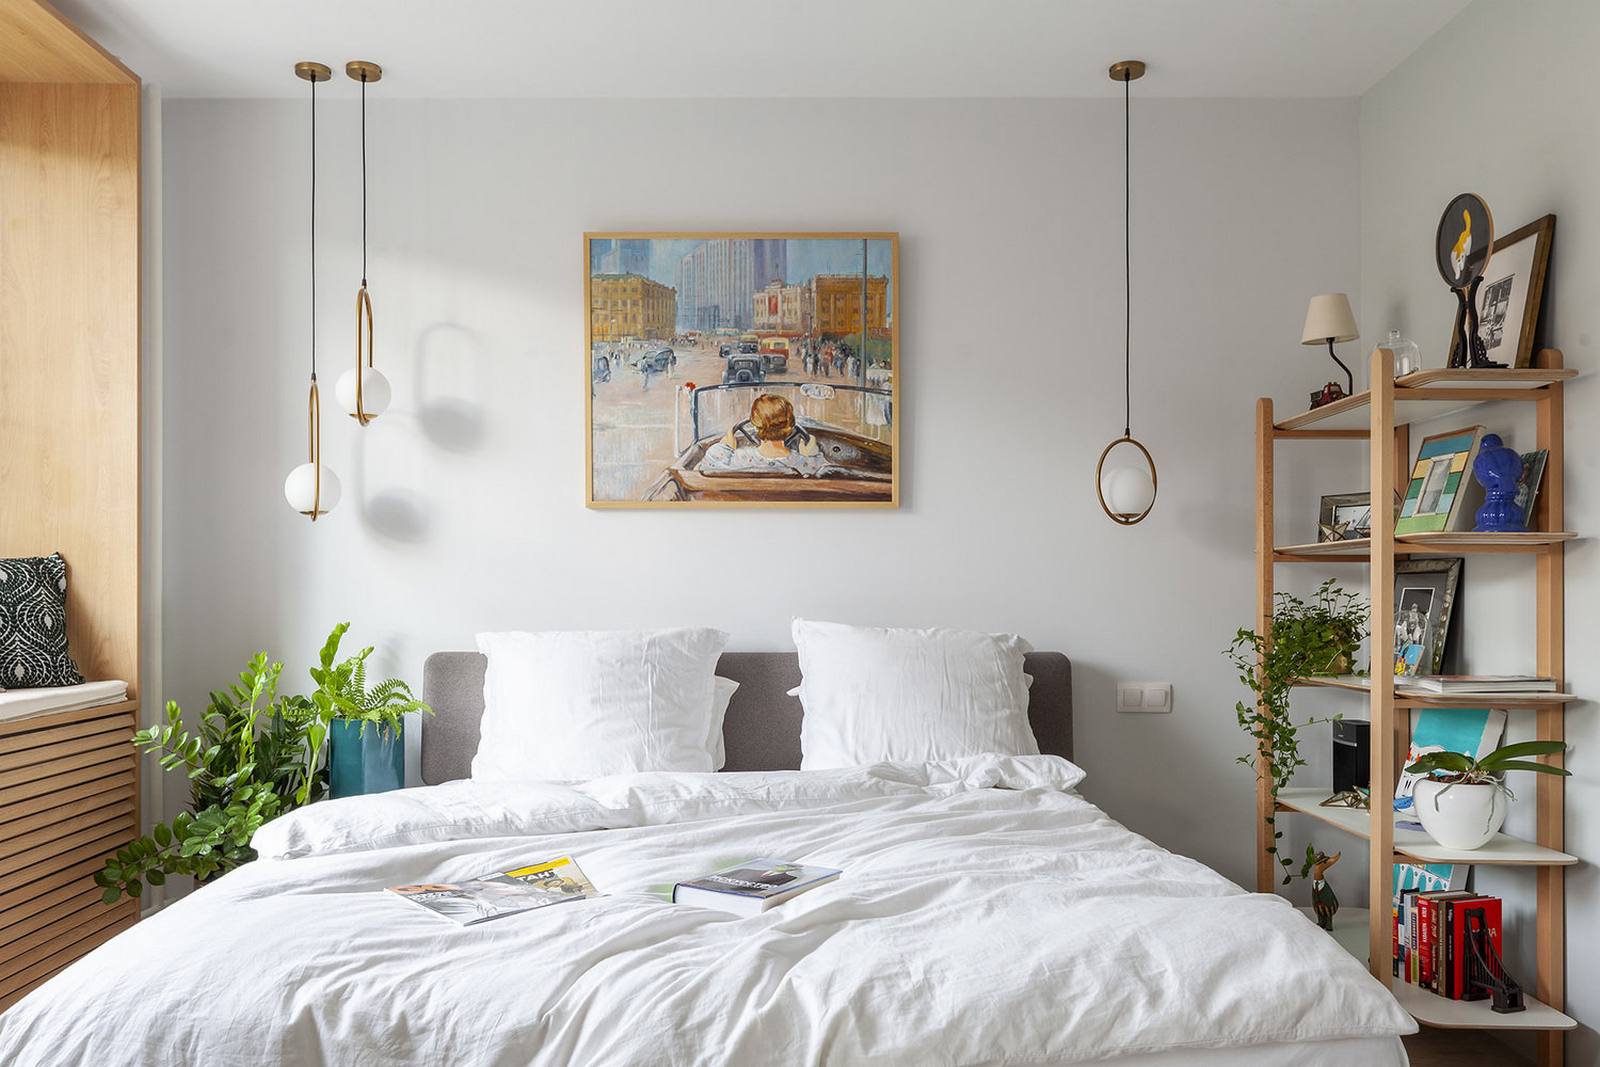 Phòng ngủ xinh đẹp của cặp vợ chồng đúng chất phong cách của xứ Bắc Âu với màu trắng thanh lịch, nội thất gỗ ấm áp và những chậu cây cảnh tươi xanh cho không gian thêm sinh động và đầy sức sống.